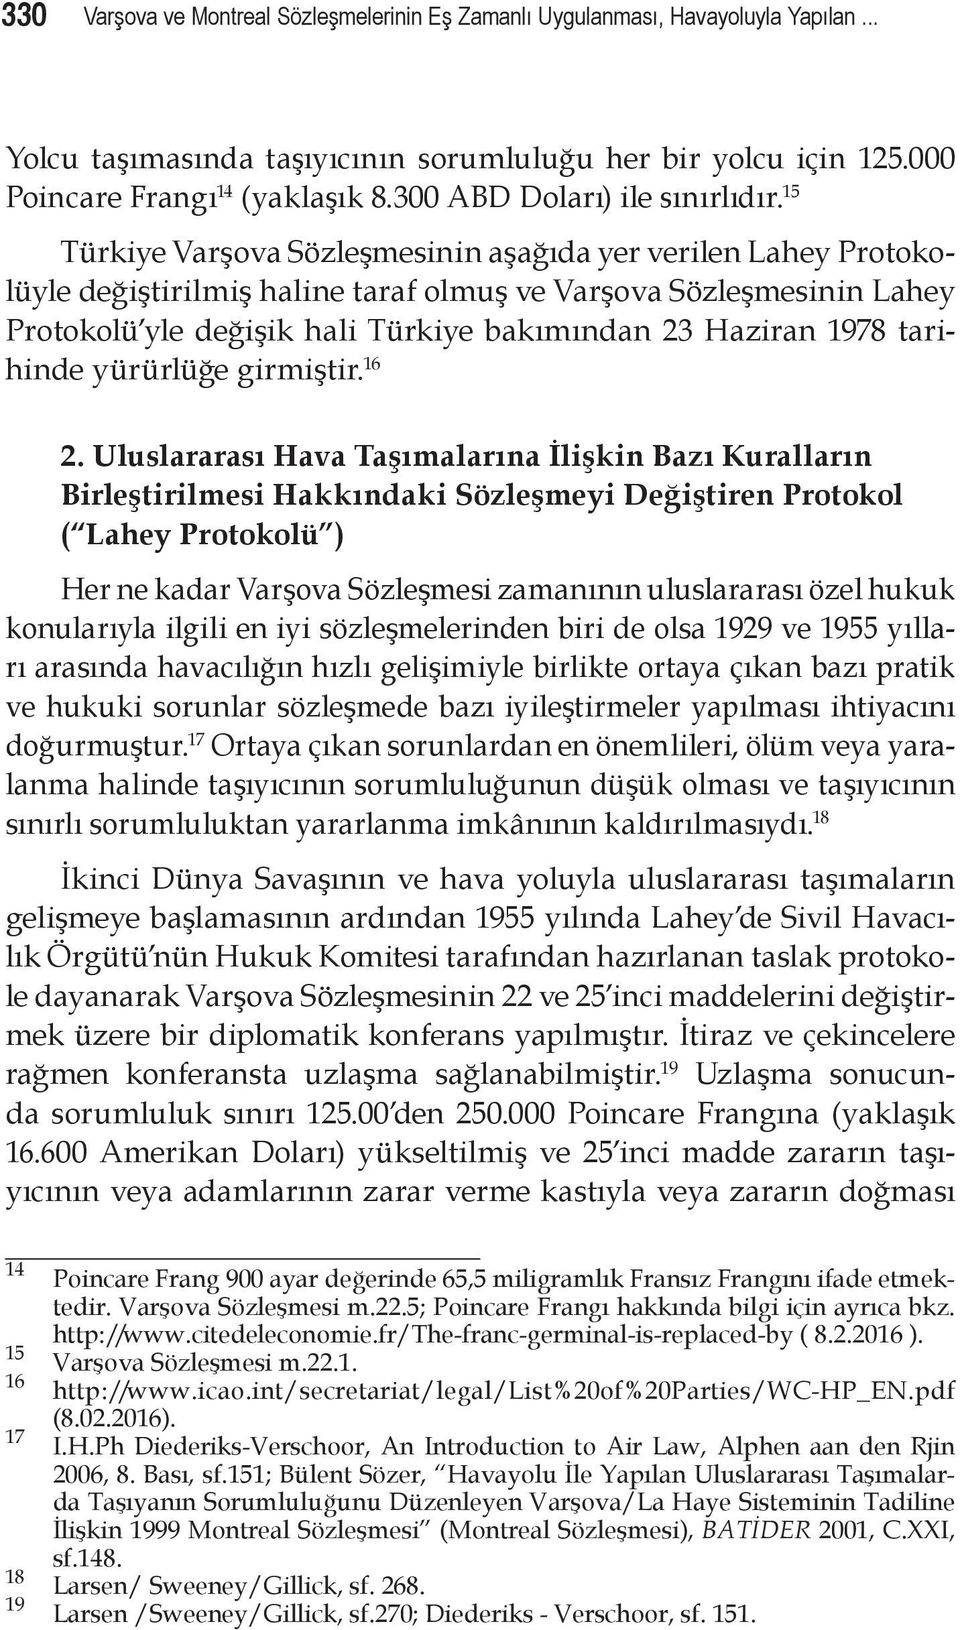 15 Türkiye Varşova Sözleşmesinin aşağıda yer verilen Lahey Protokolüyle değiştirilmiş haline taraf olmuş ve Varşova Sözleşmesinin Lahey Protokolü yle değişik hali Türkiye bakımından 23 Haziran 1978